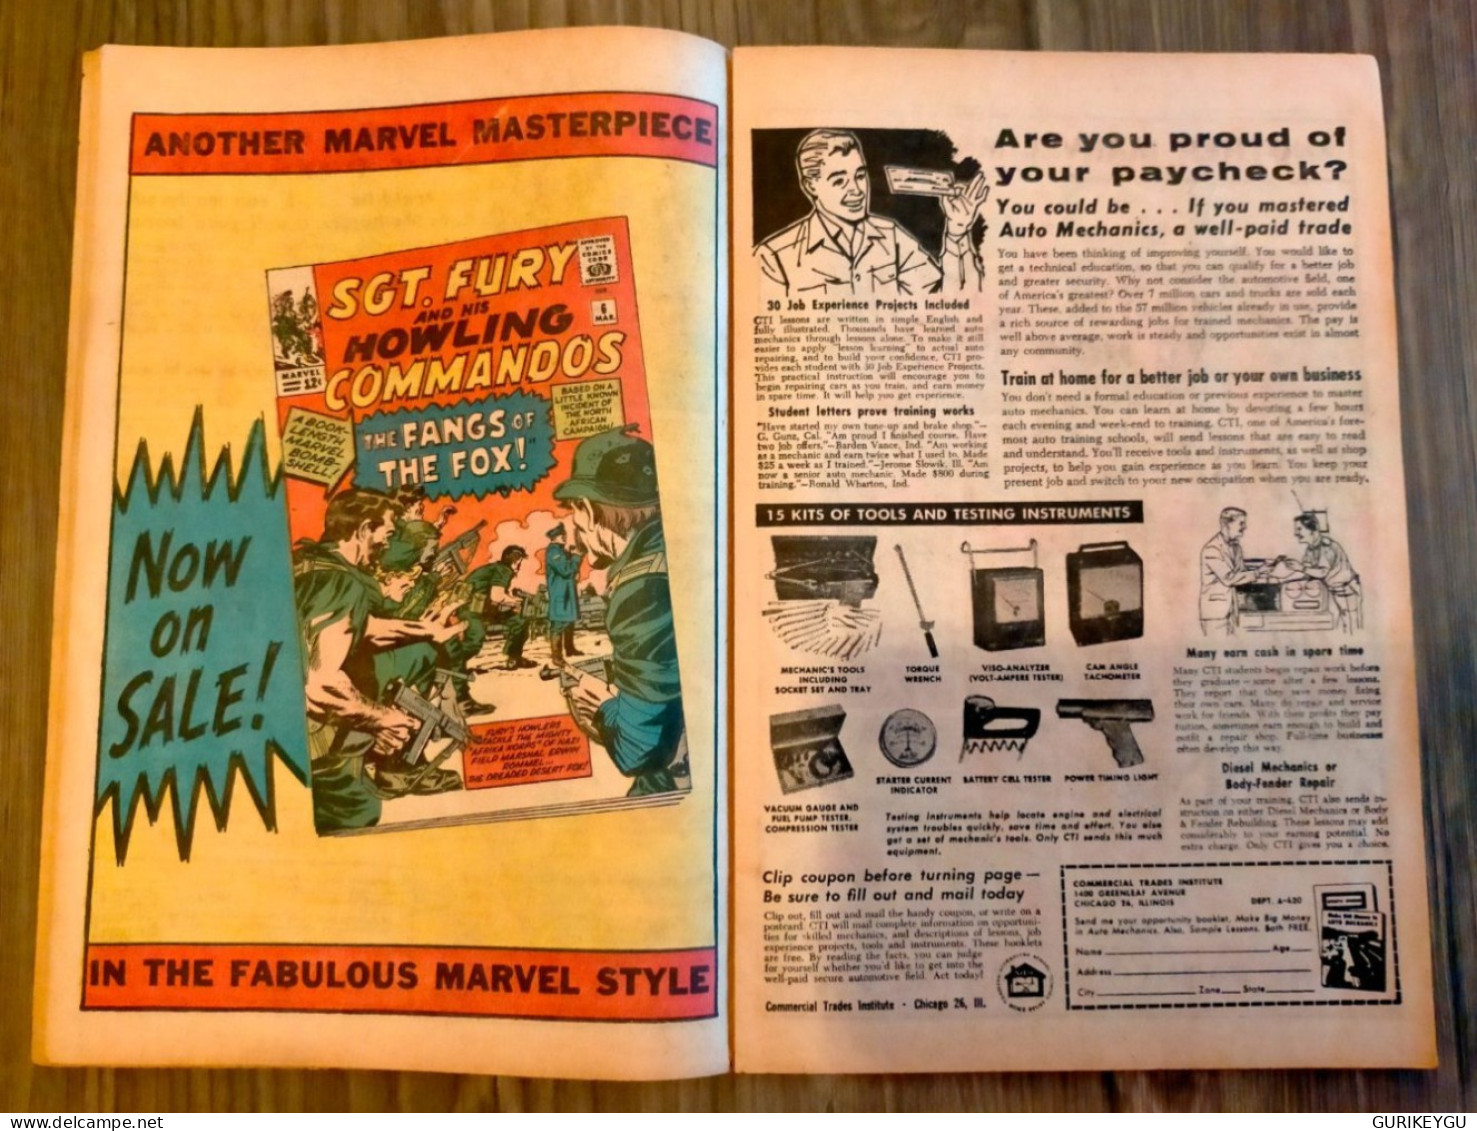 rarissime bd the AVENGERS CAPTAIN AMERICA n° 4 MARVEL COMICS mars 1964 éditions originale dédicacé par STAN LEE